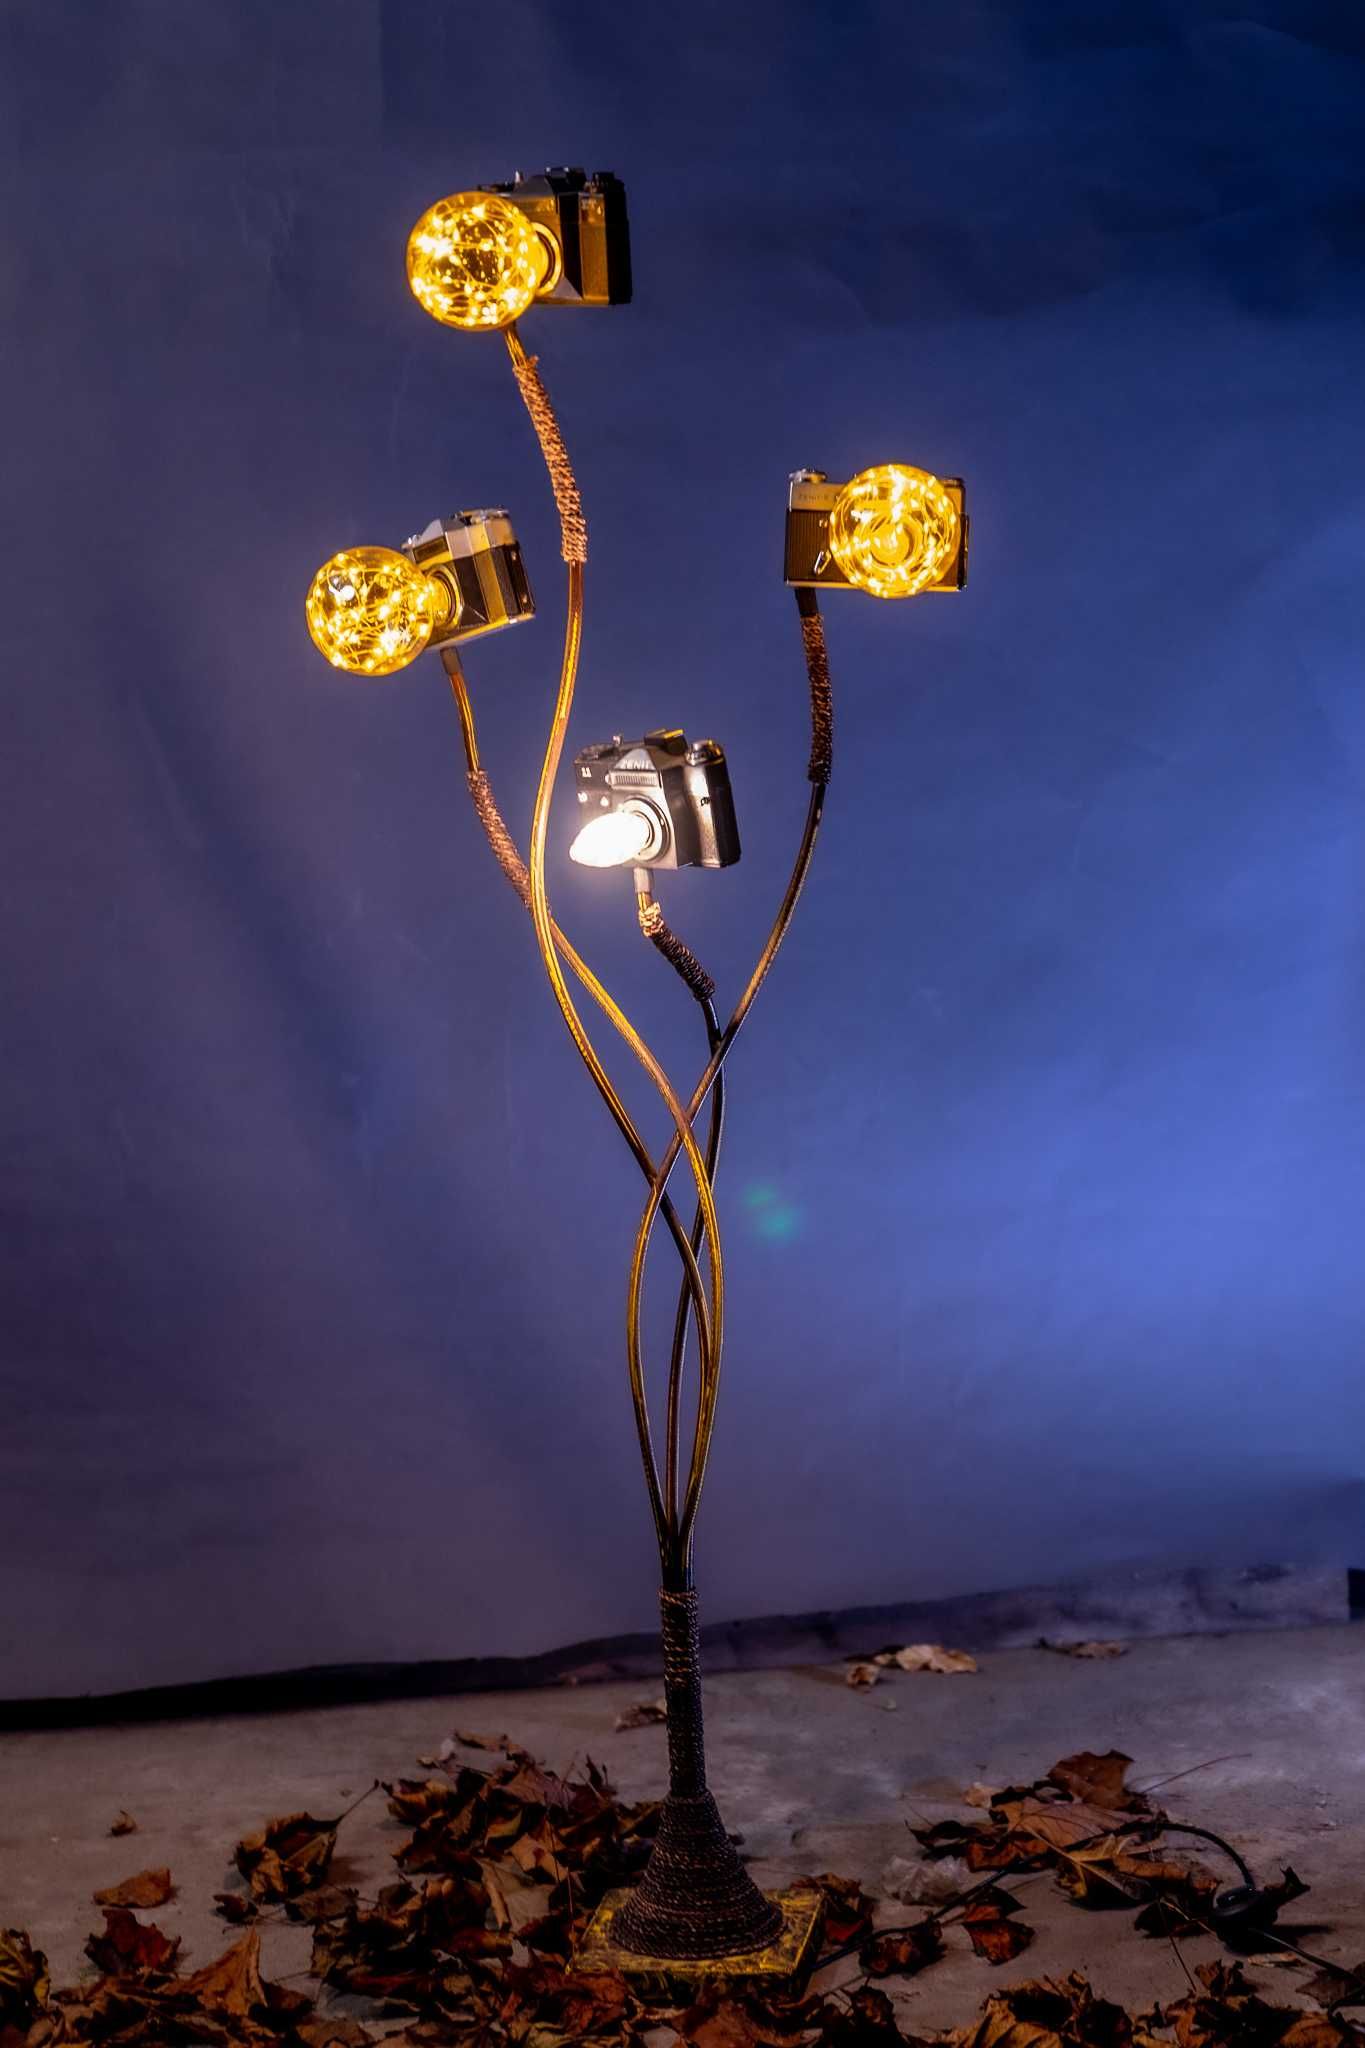 Lampa, lampka podłogowa fotograficzna z aparatów Zenit